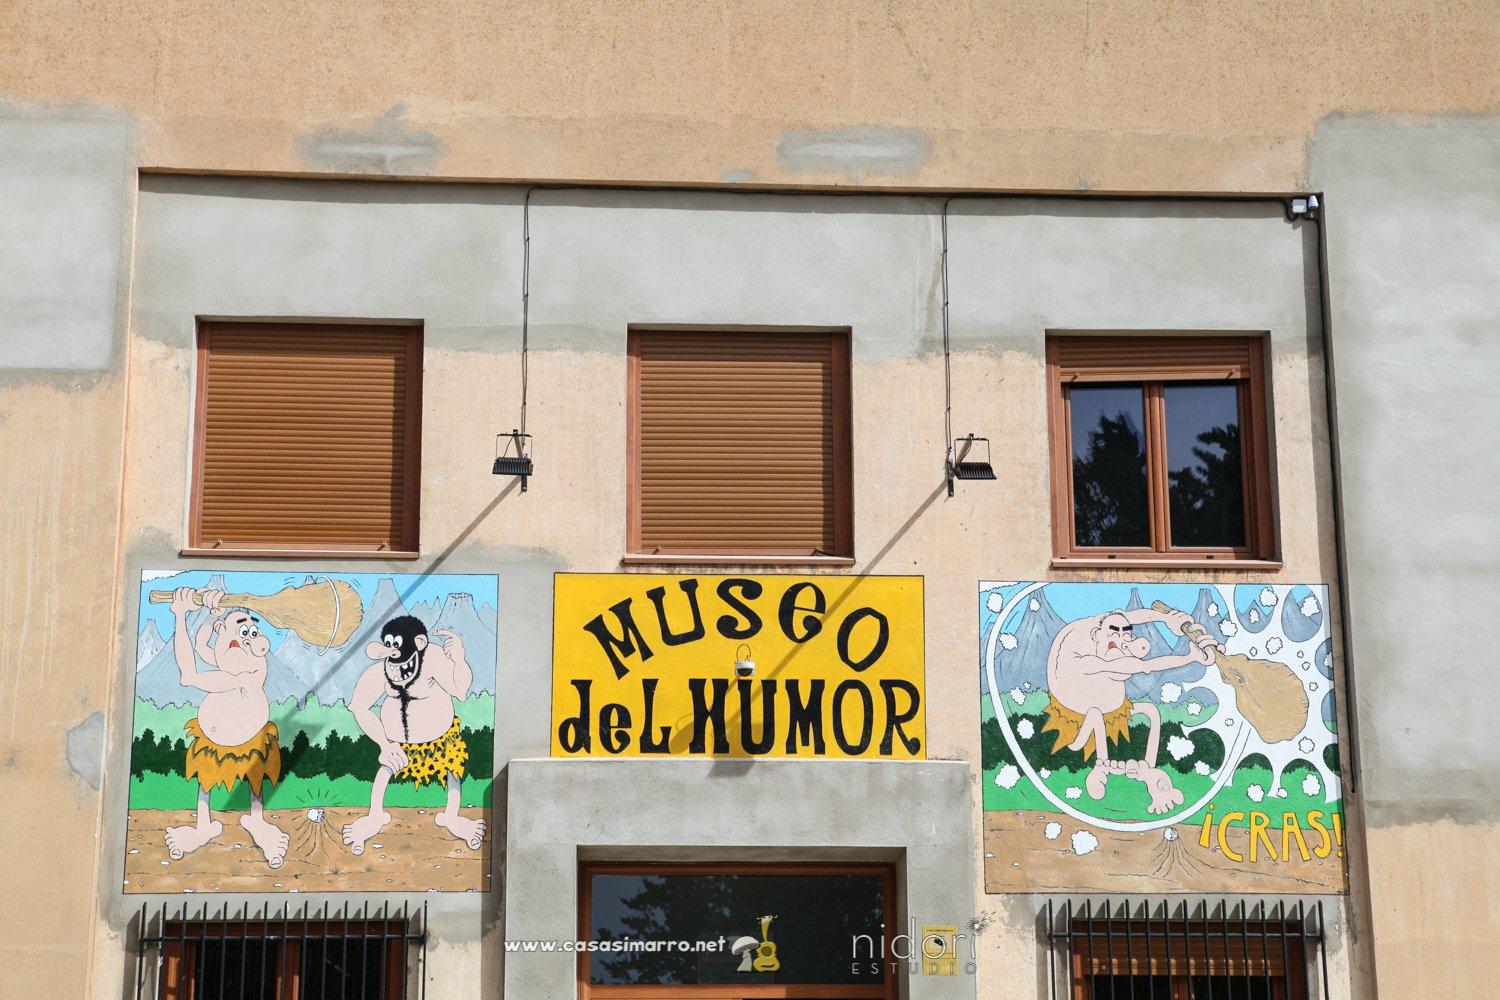 Museo del humor de Casasimarro 1